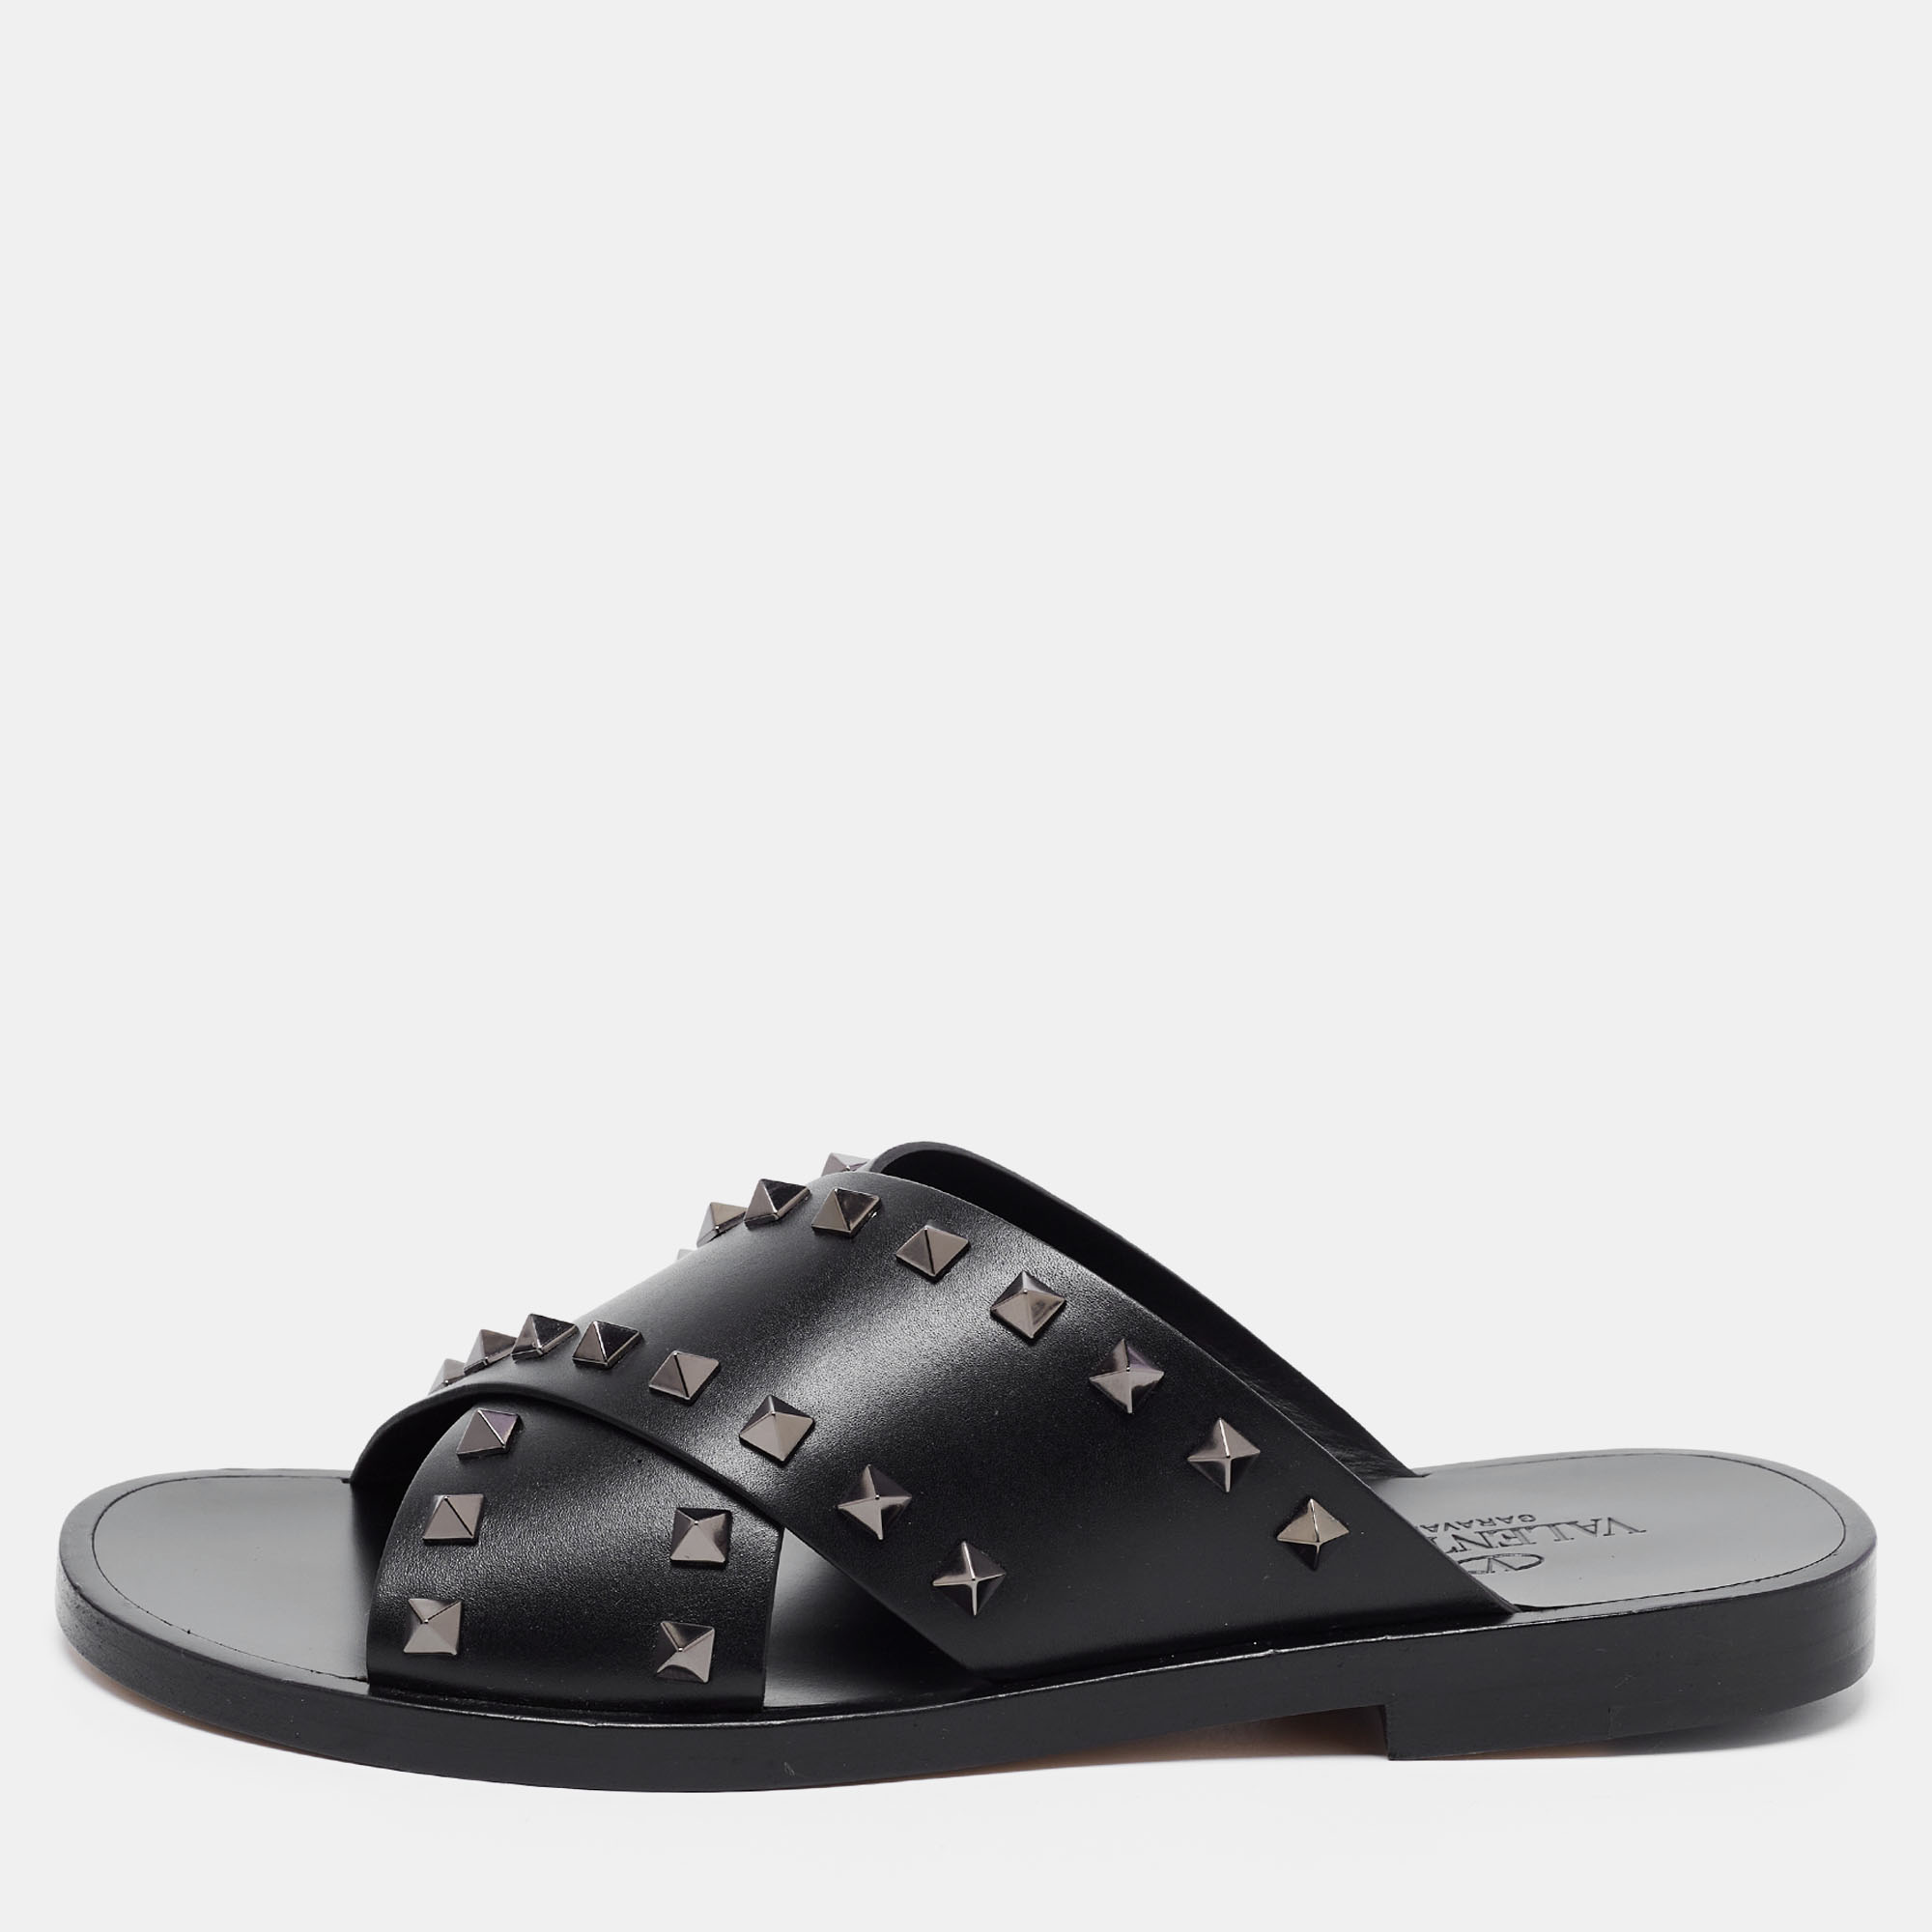 Pre-owned Valentino Garavani Black Leather Rockstud Slide Sandals Size 40